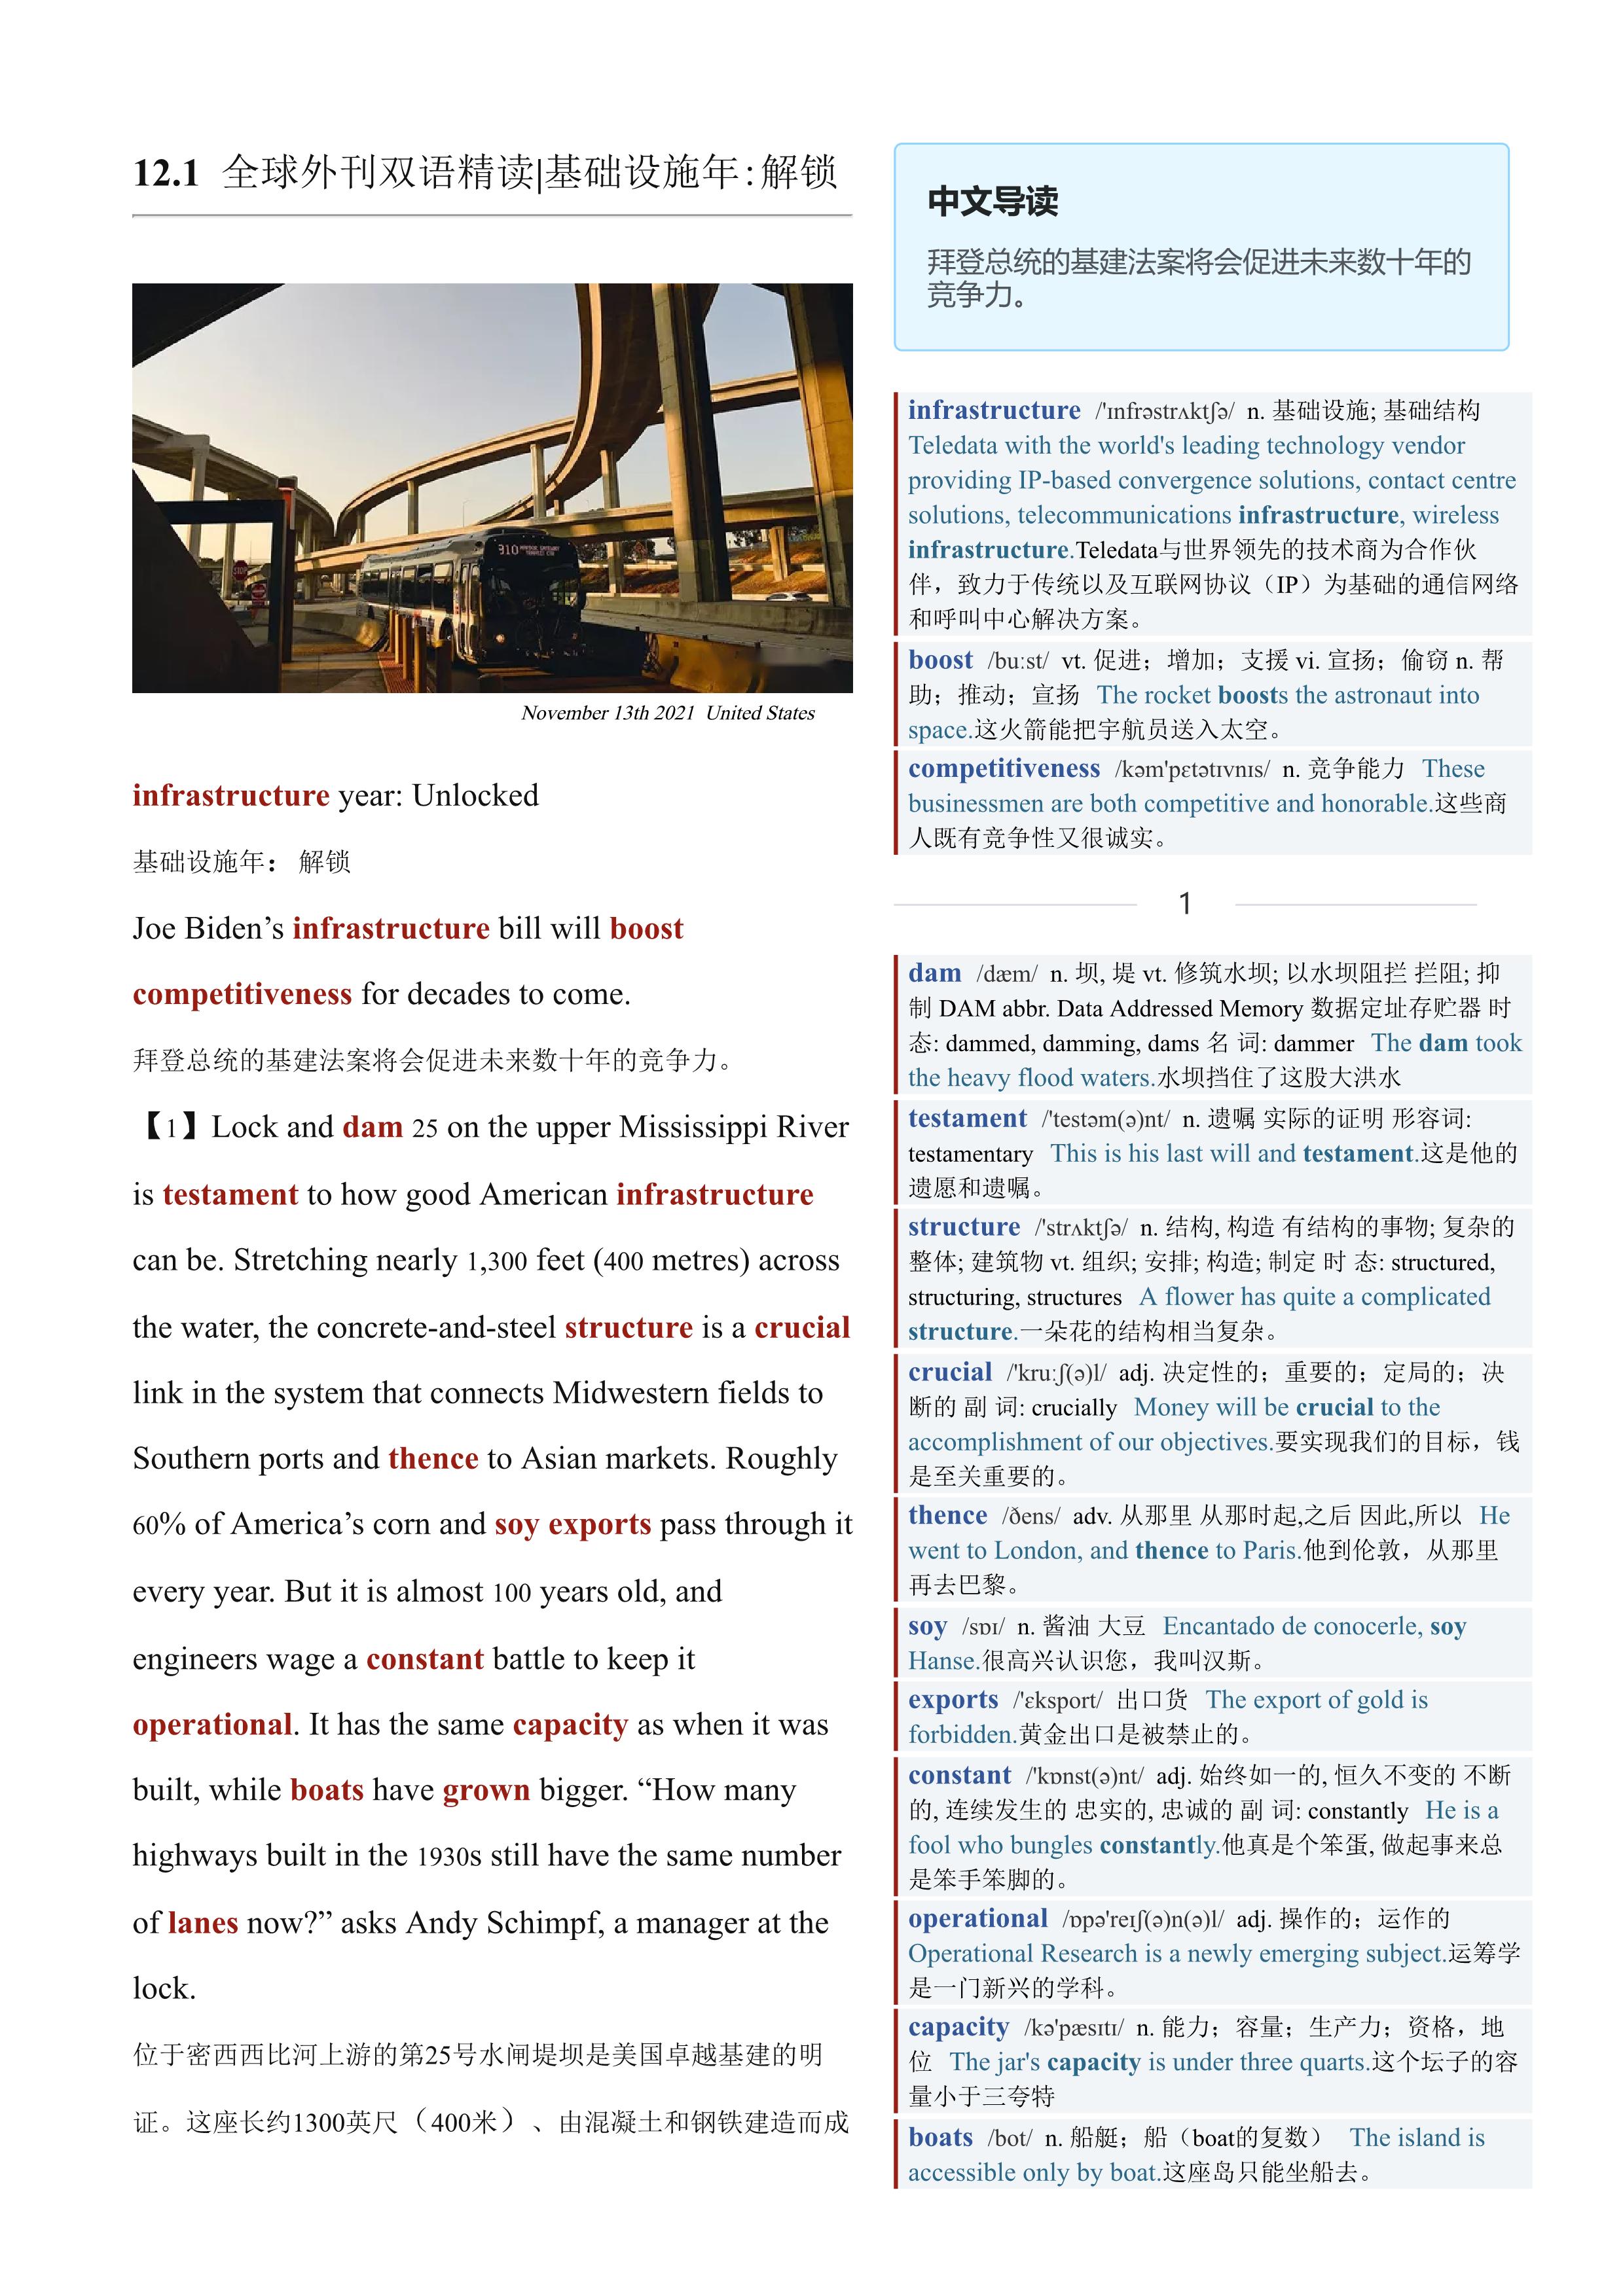 2021.12.01 经济学人双语精读丨基础设施年:解锁 (.PDF/DOC/MP3)